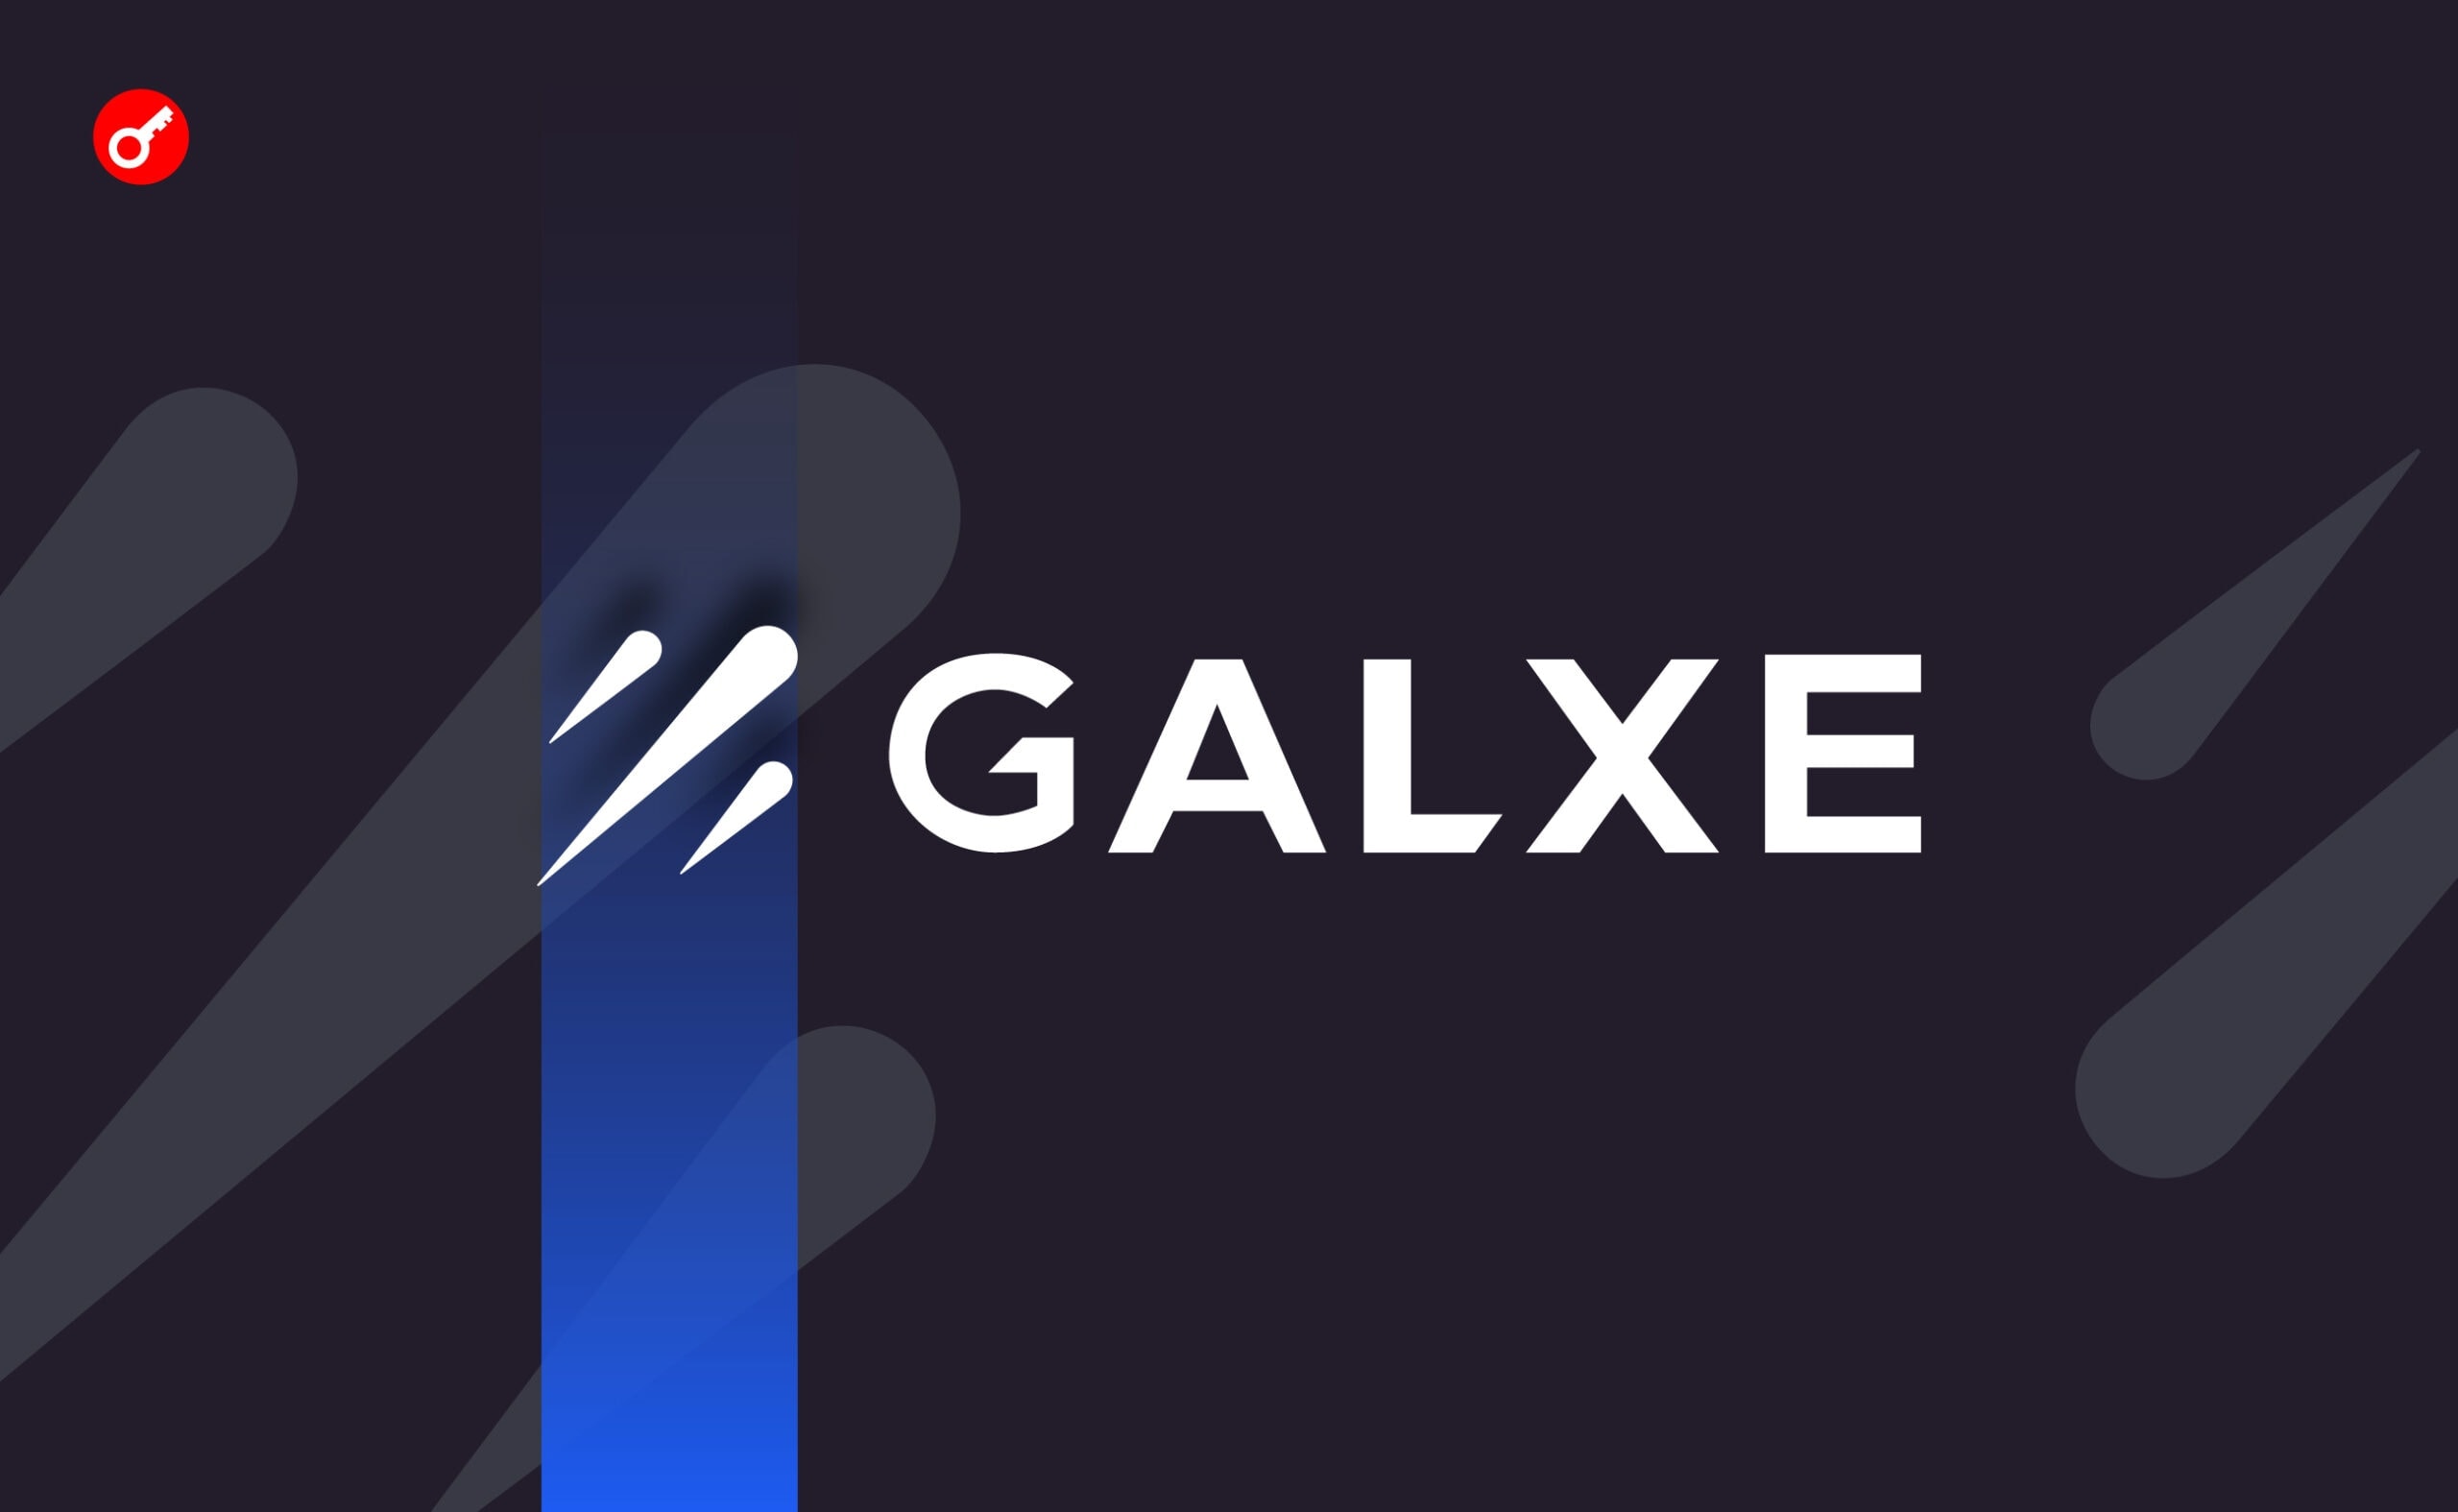 Сайт Galxe прекратил работу. В сети сообщили о возможном взломе. Заглавный коллаж новости.